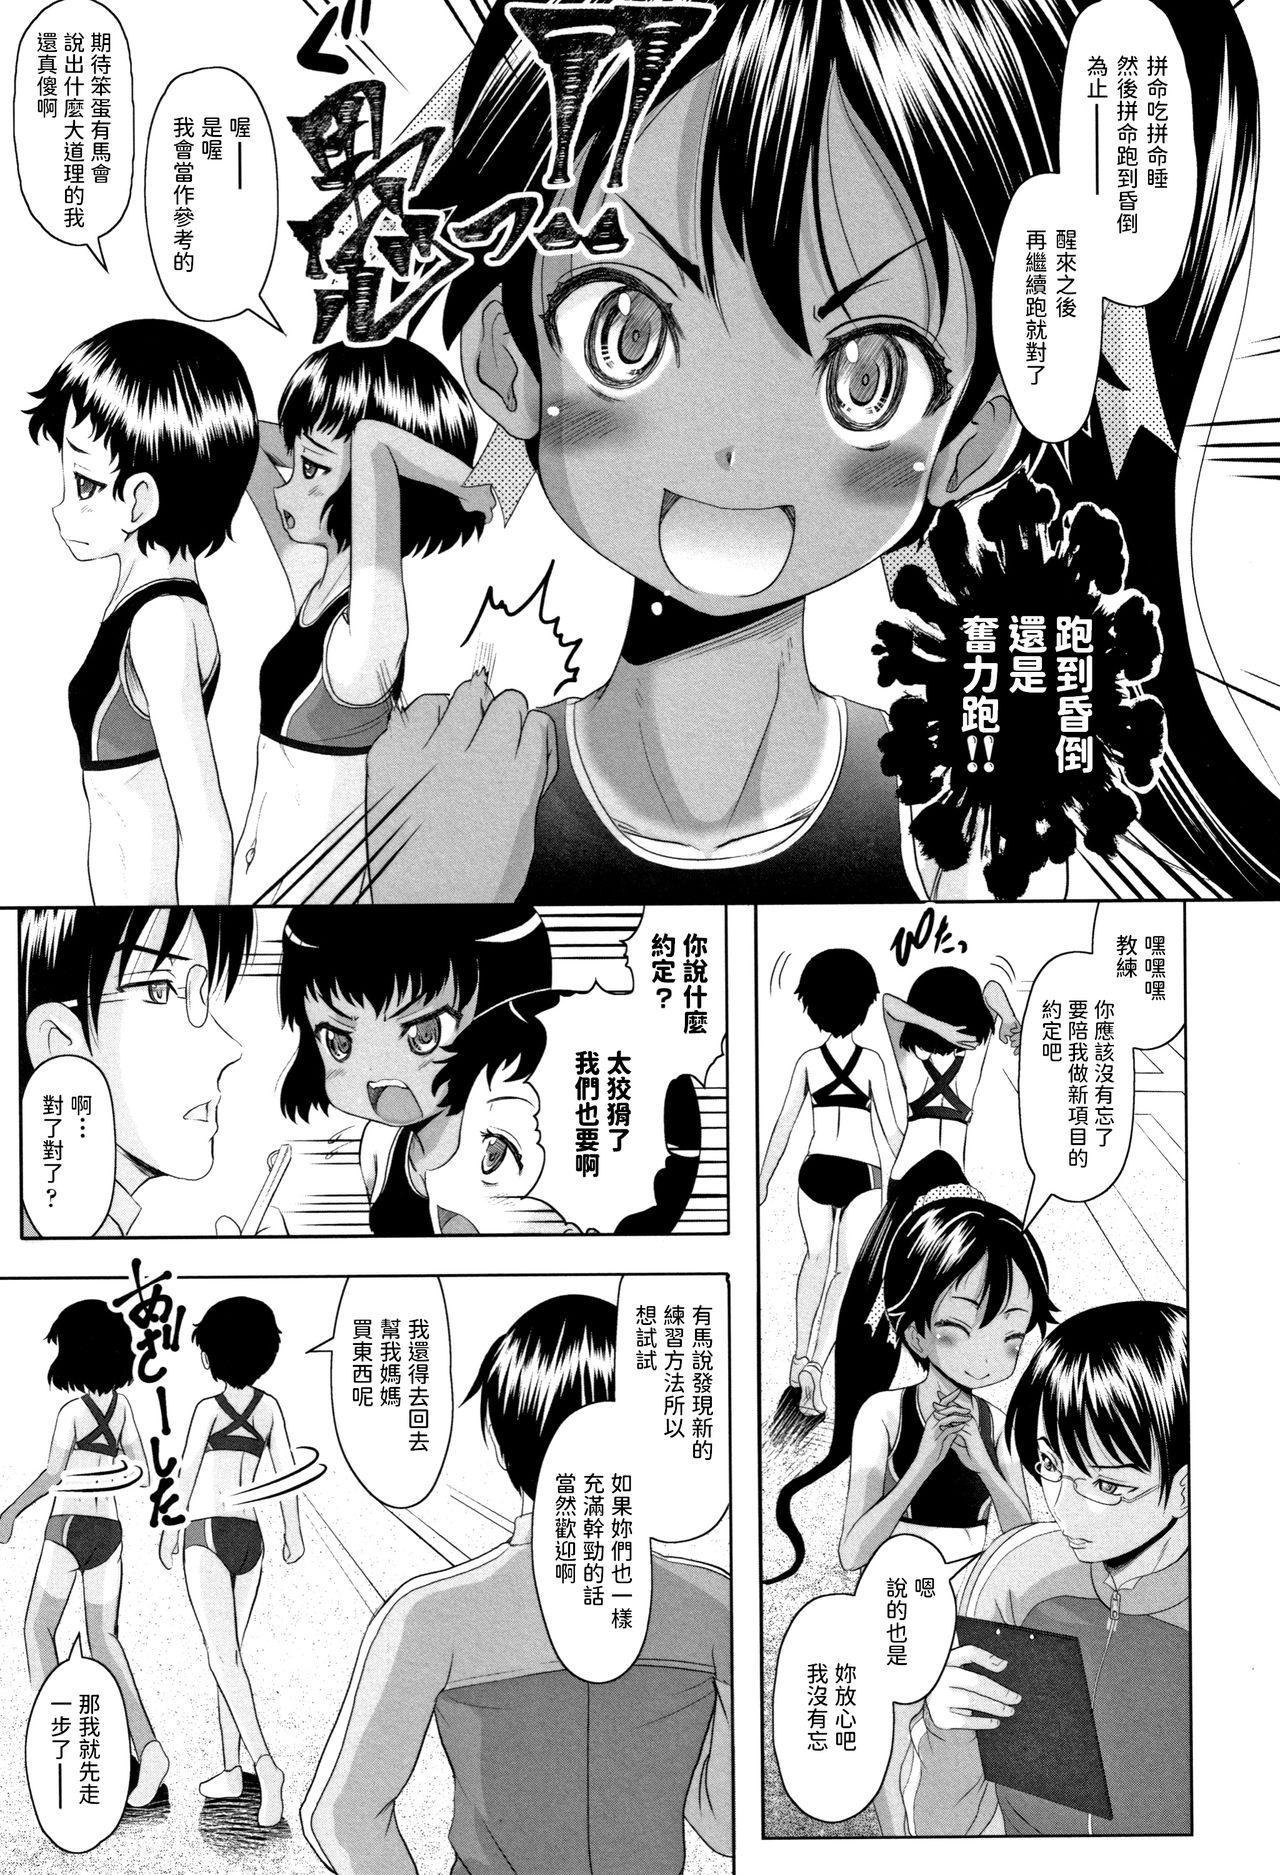 Teenage Sex Arima to Himitsu no Tokkun Shiyo! Spread - Page 3